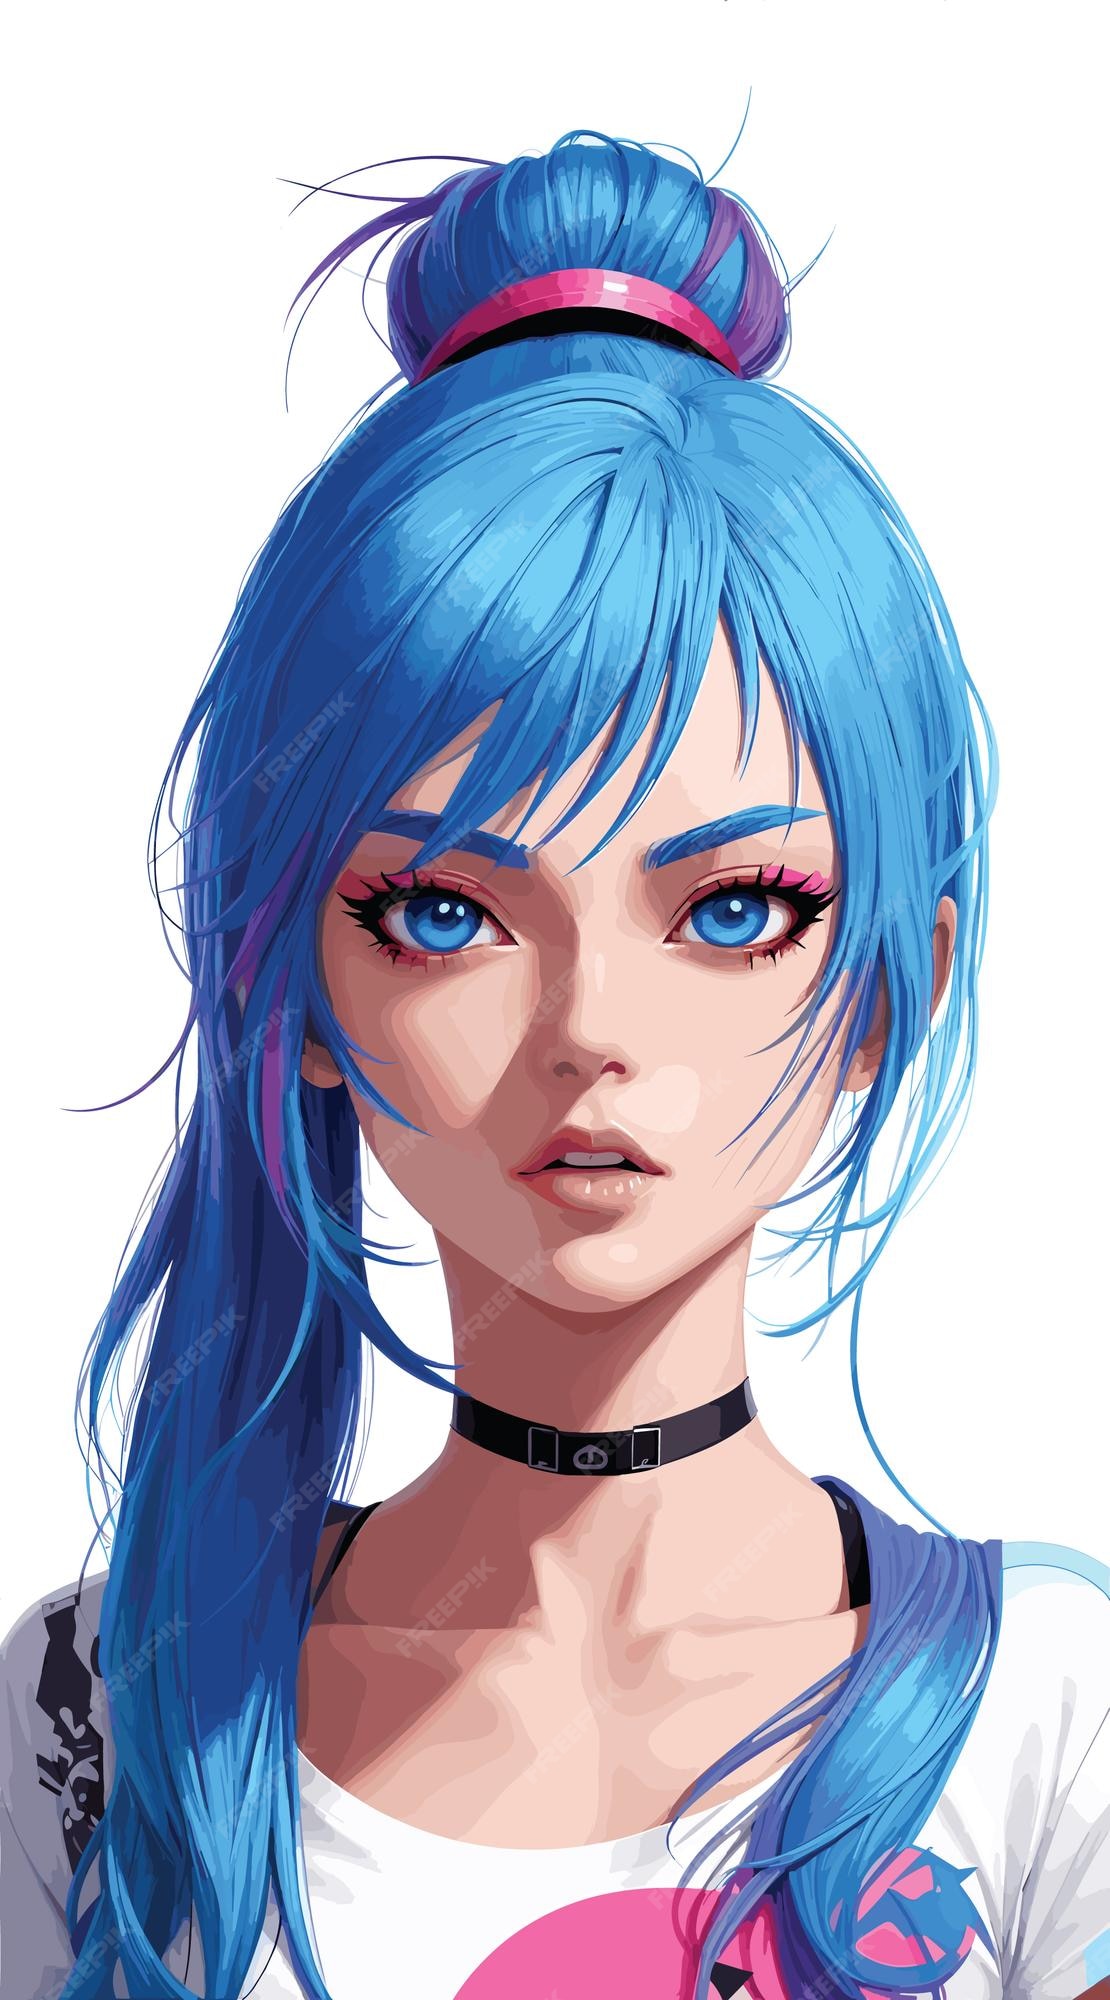 Personagem de anime moderno com cores vibrantes do estilo cyberpunk